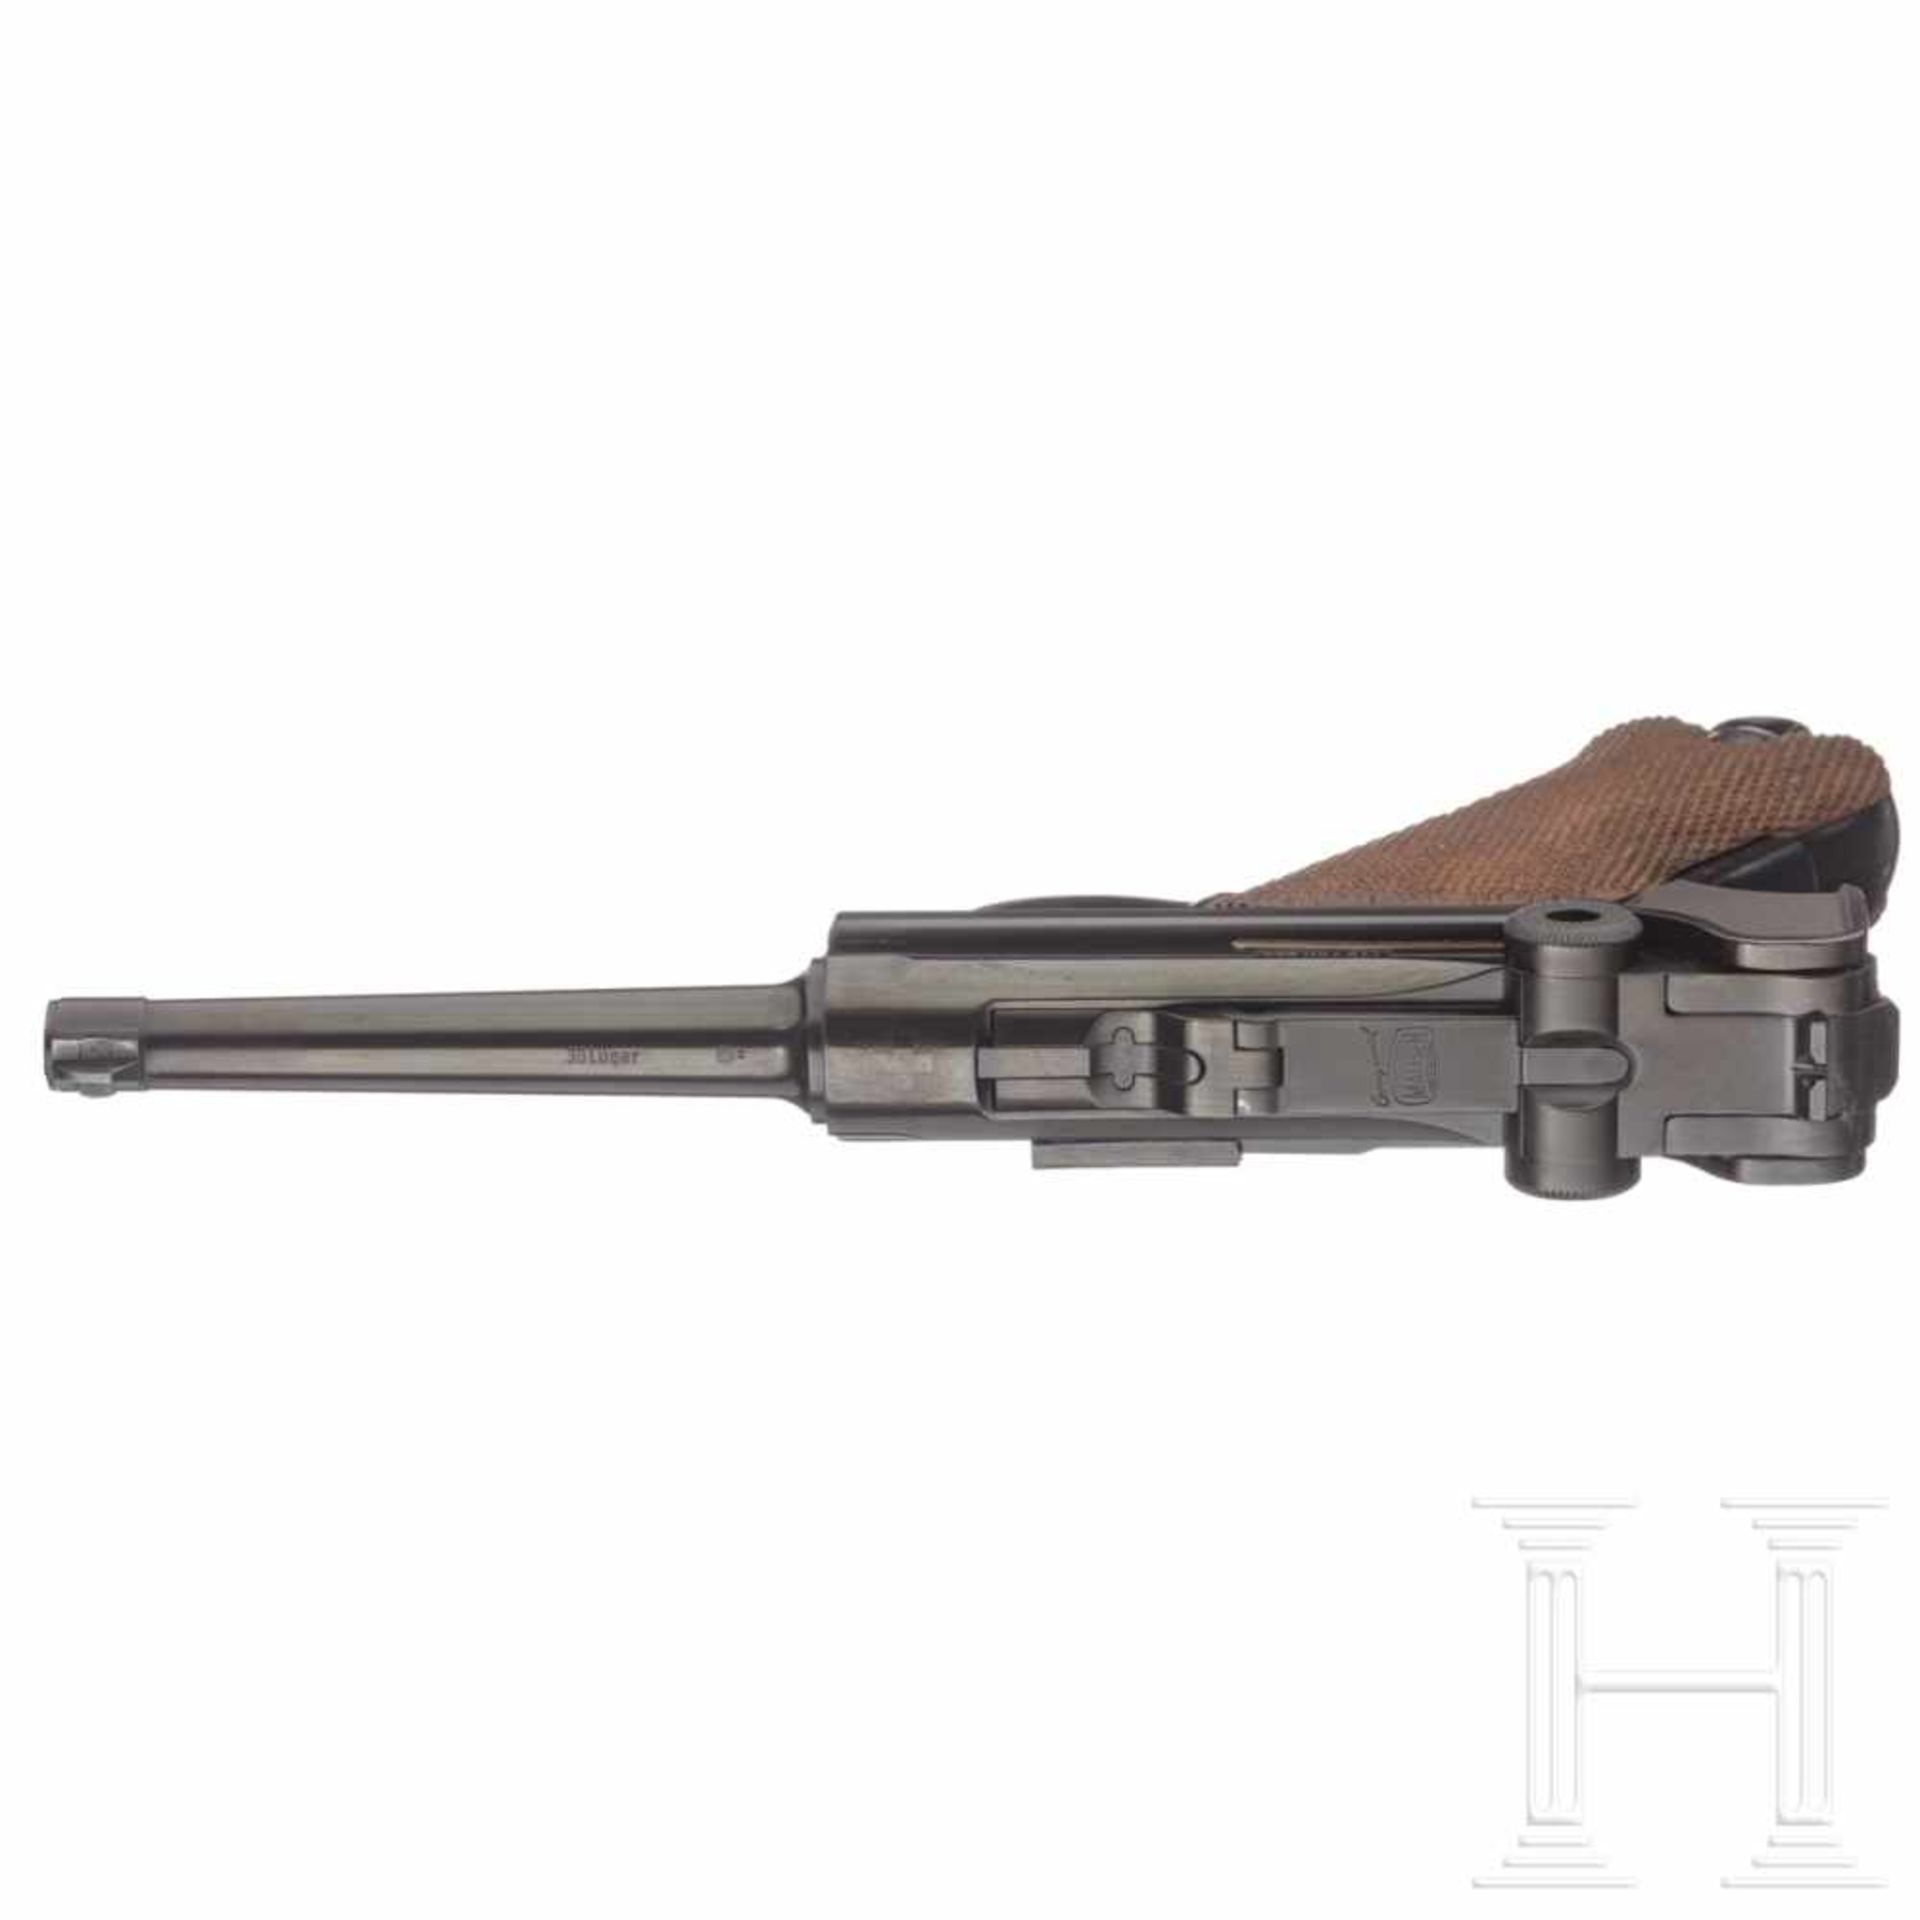 A P08/75 Mauser commemorativel "75 years Parabellum Pistol"Cal. 7.65 mm Luger, no. 176/250, matching - Bild 3 aus 3